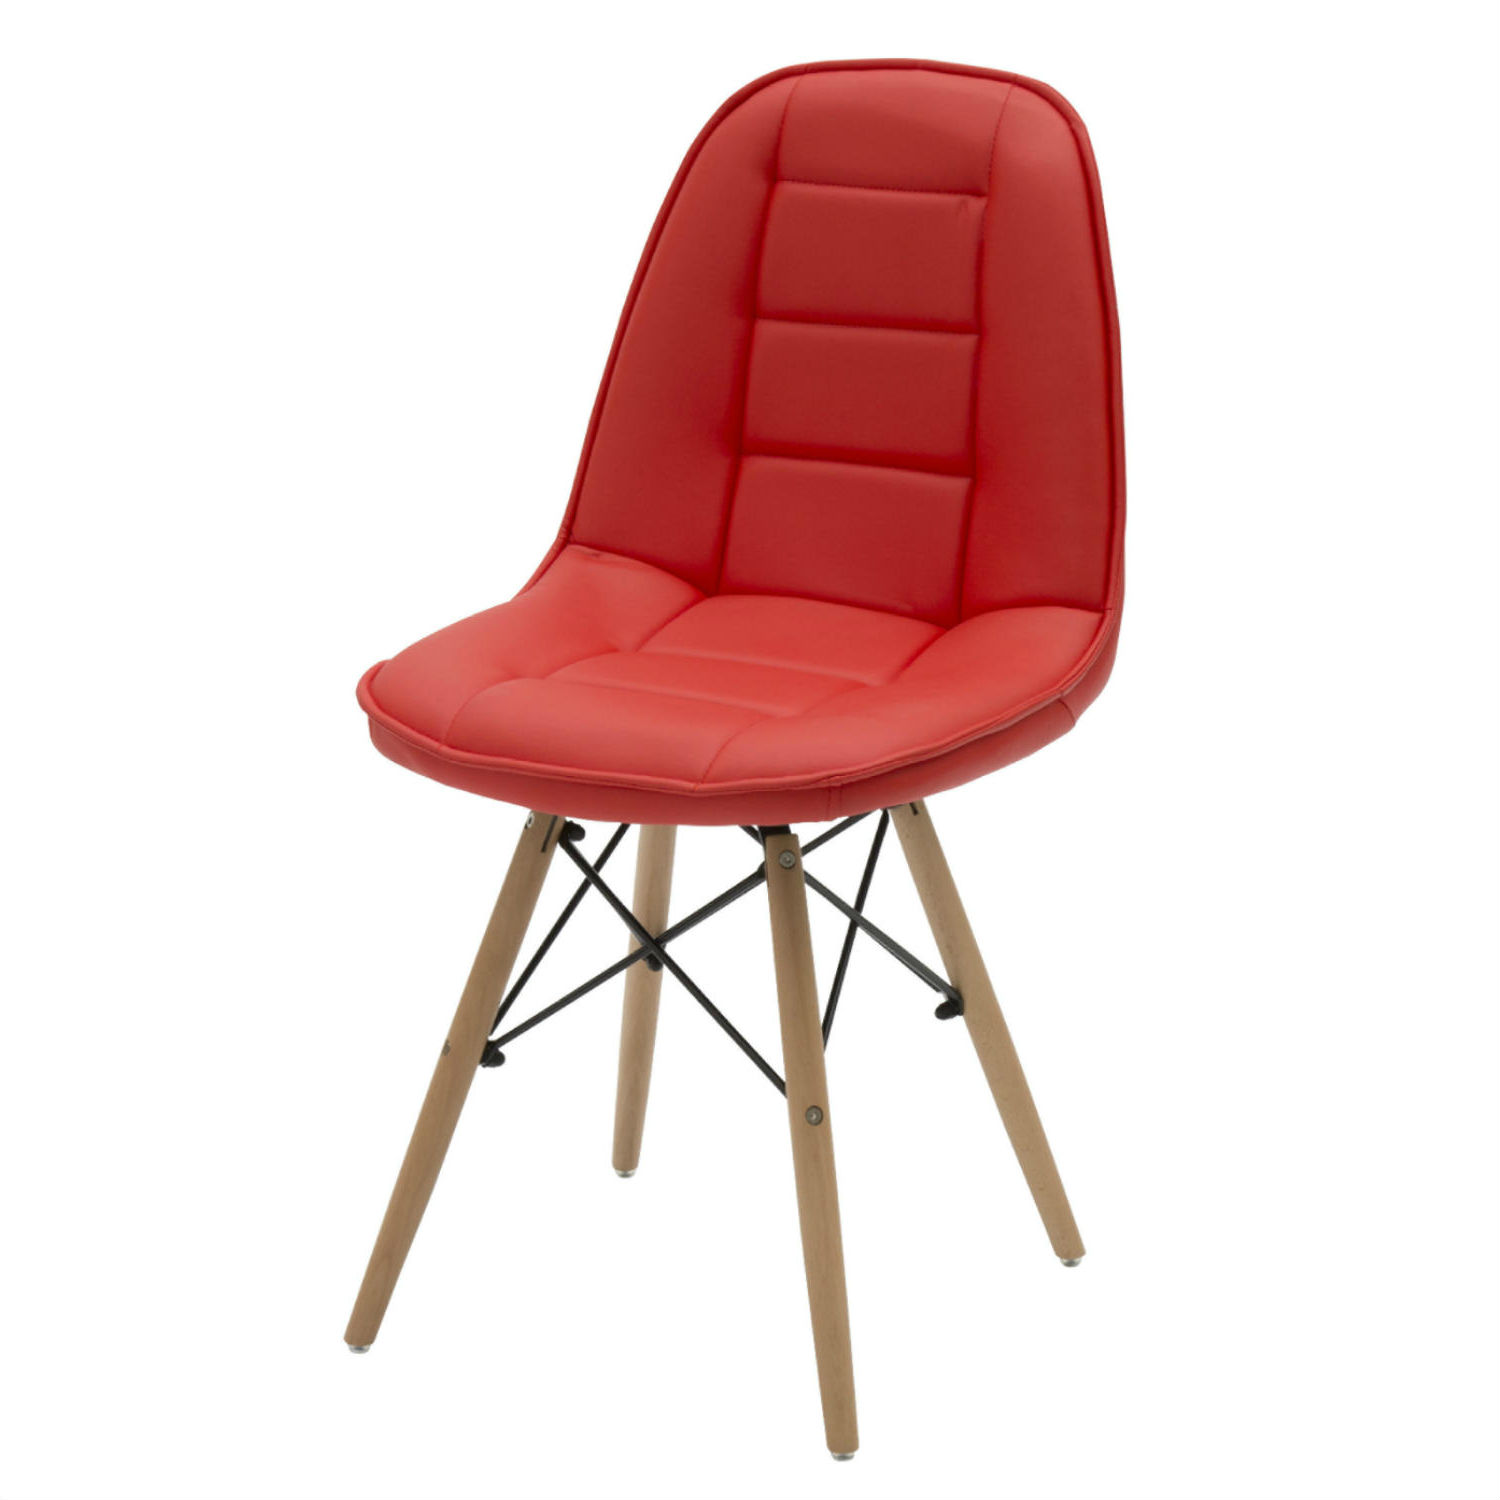 Sedia Moderna per Ufficio in Ecopelle Rossa 2 Pezzi (disponibile anche in altri colori)